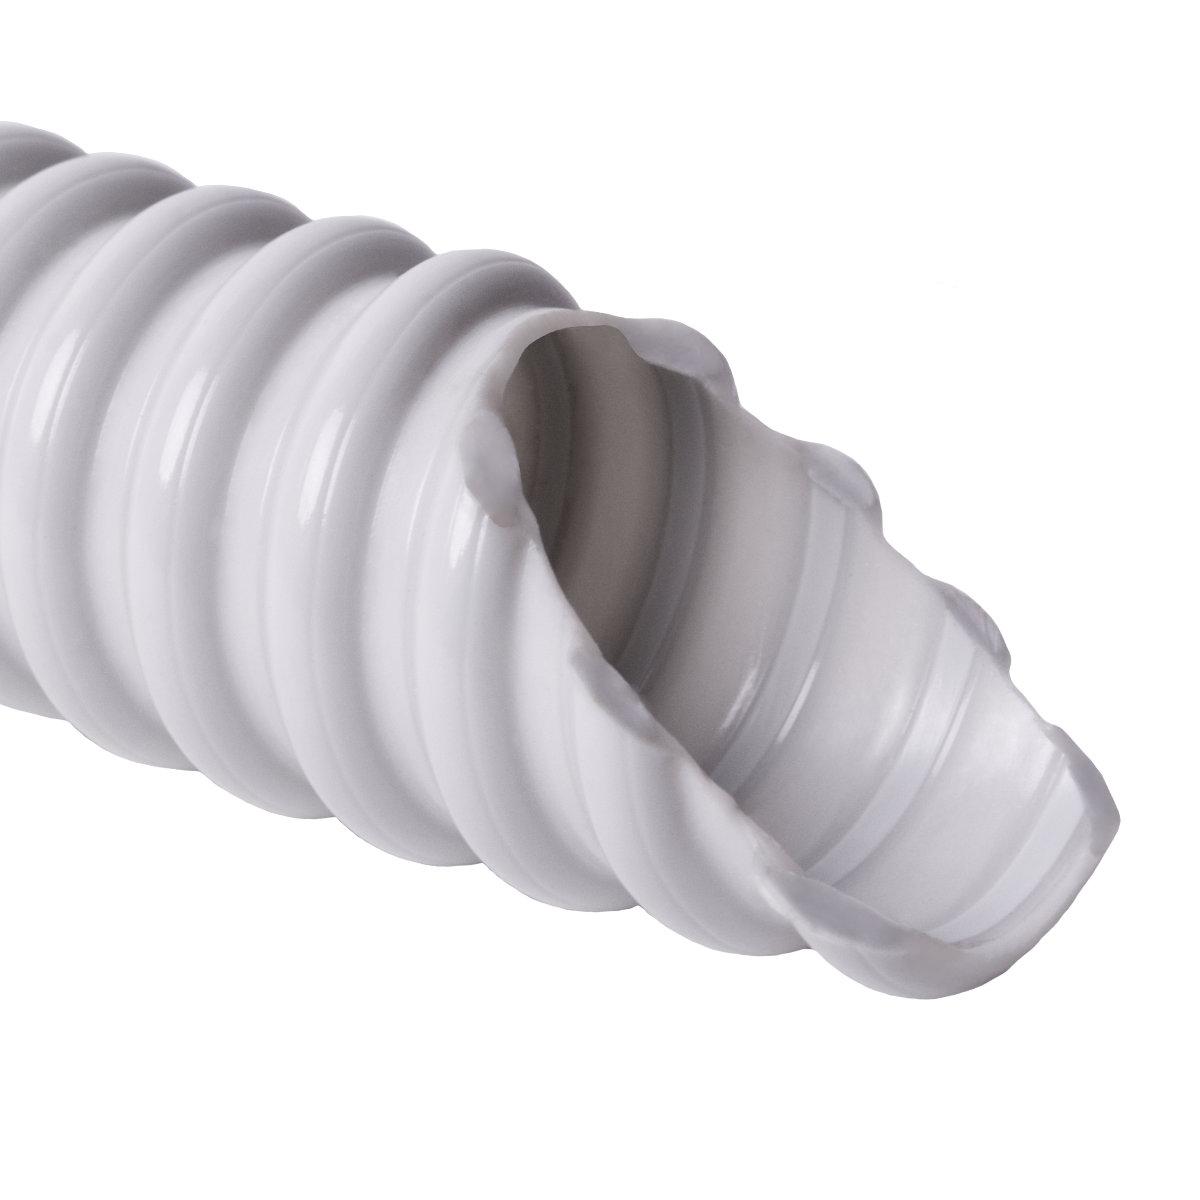 Труба гофрована електромонтажна армована спираллю SPIROFLEX самозагасаюча; 320 N/5см / 5 см; Ø25мм; твердий ПВХ; світло-сіра